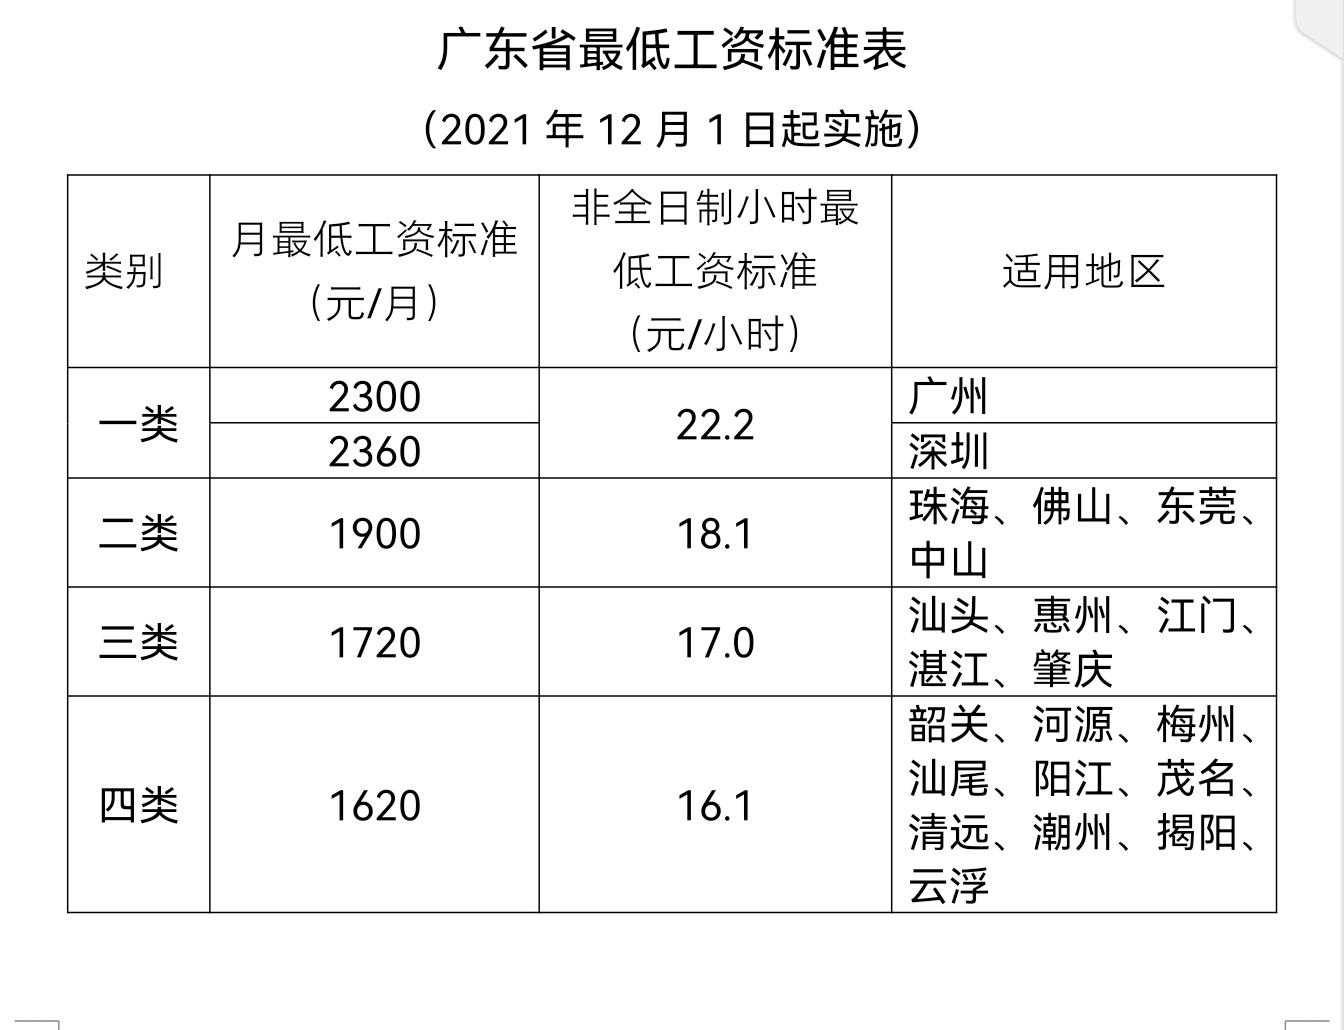 广东下月起提高月最低工资标准 进一步保障和改善民生